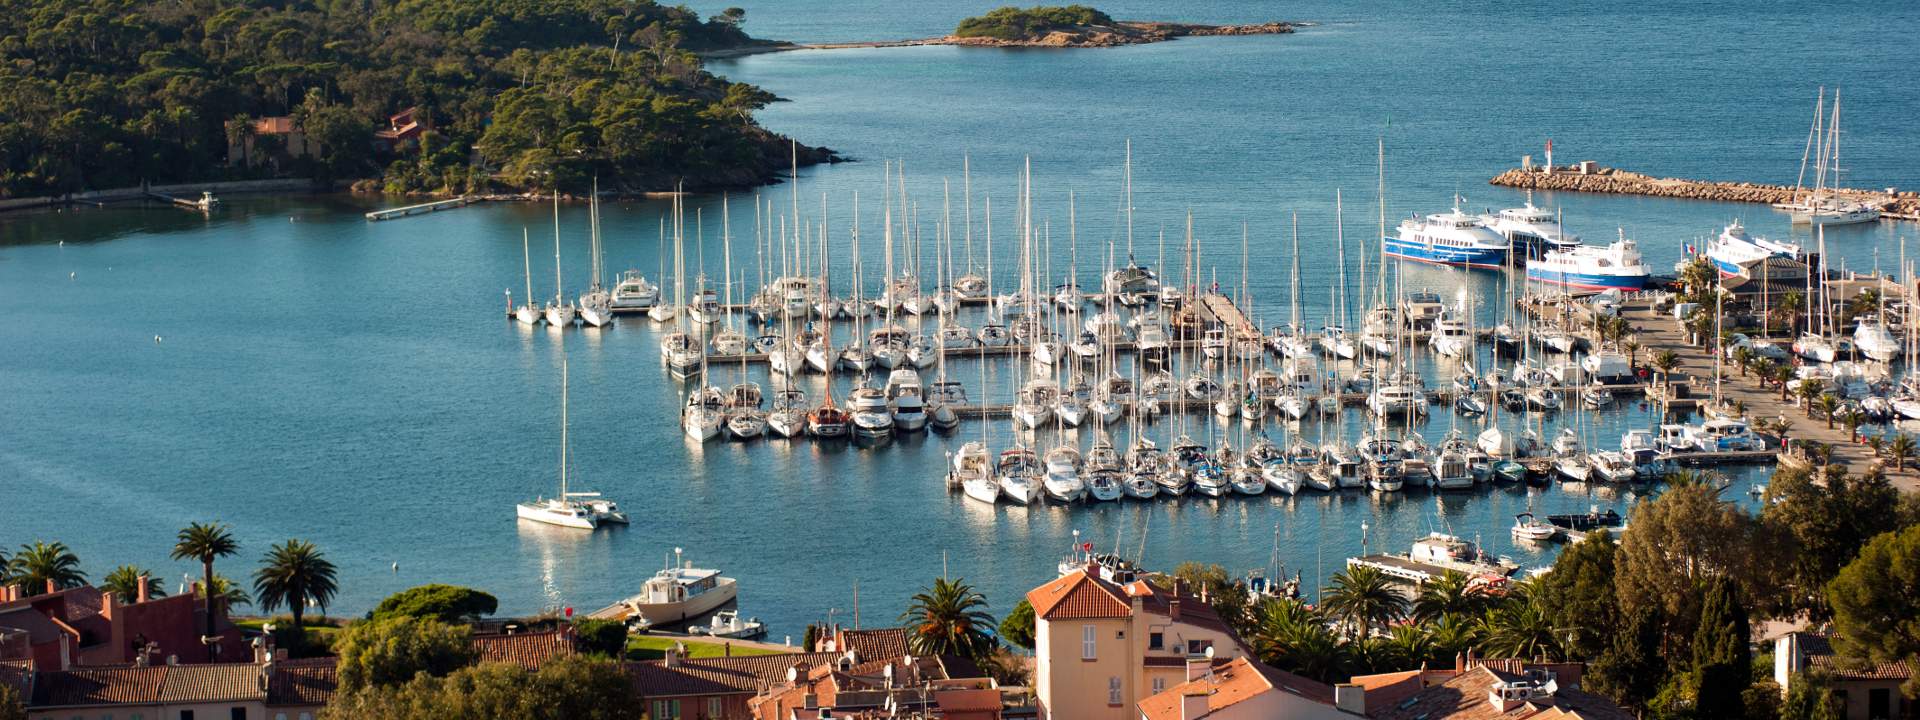 Apprenez la voile en catamaran sur la Côte d'Azur